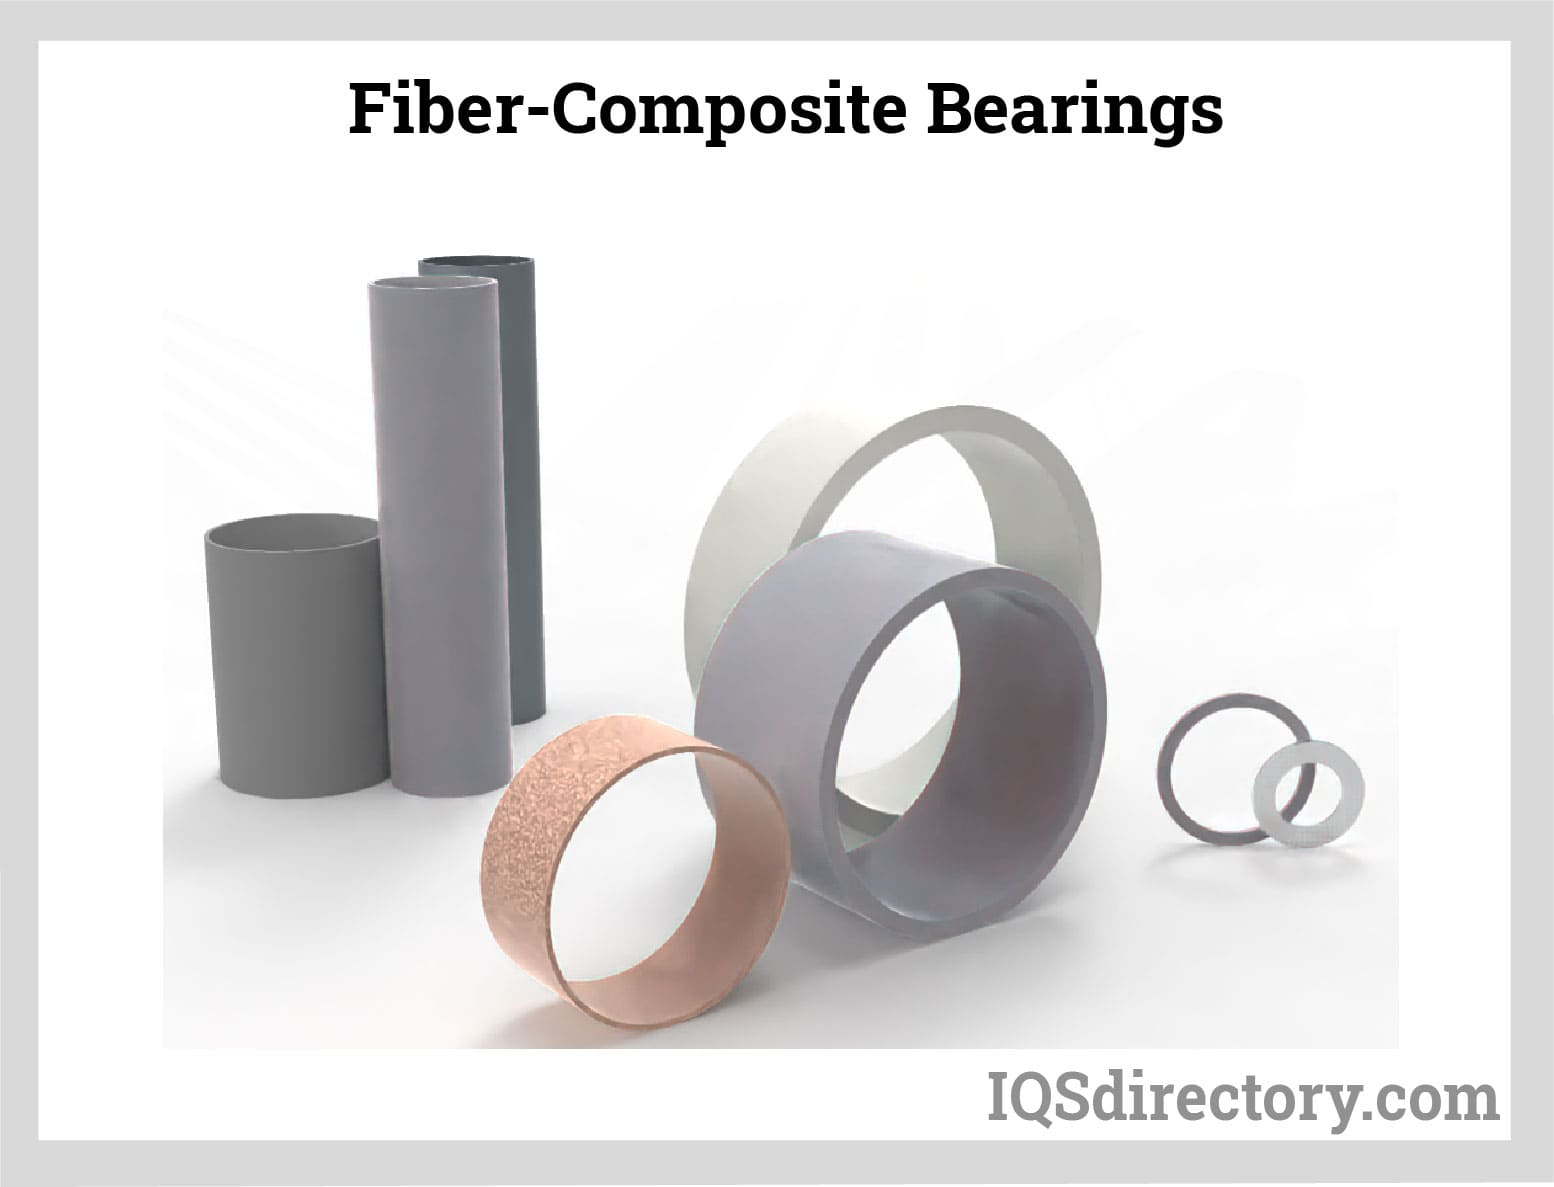 Fiber-Composite Bearings